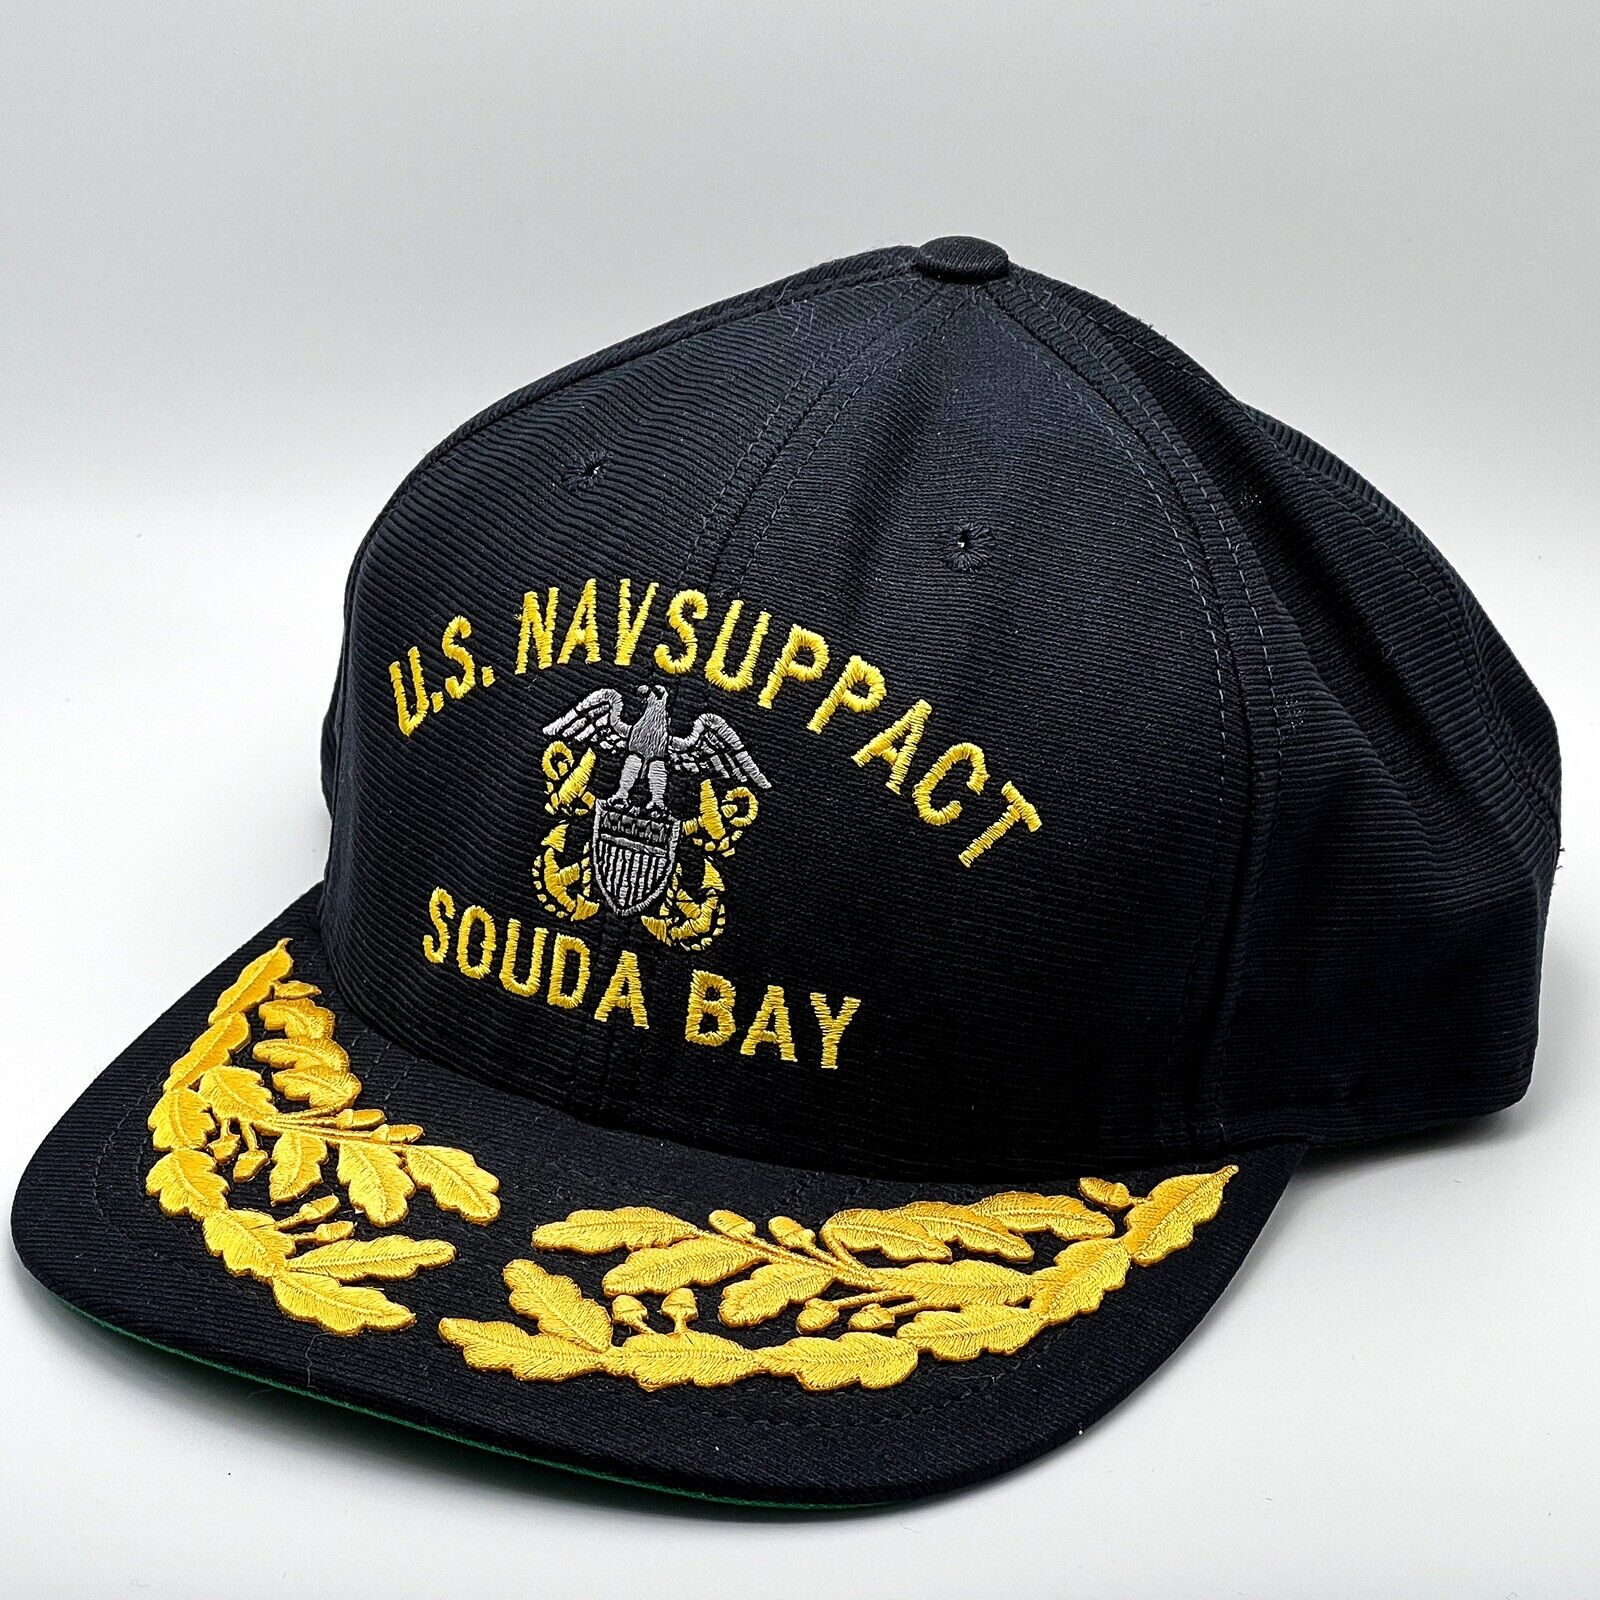 U.S. Navsuppact Souda Bay Ball Cap Hat Snapback Baseball Scrambled Egg Navy